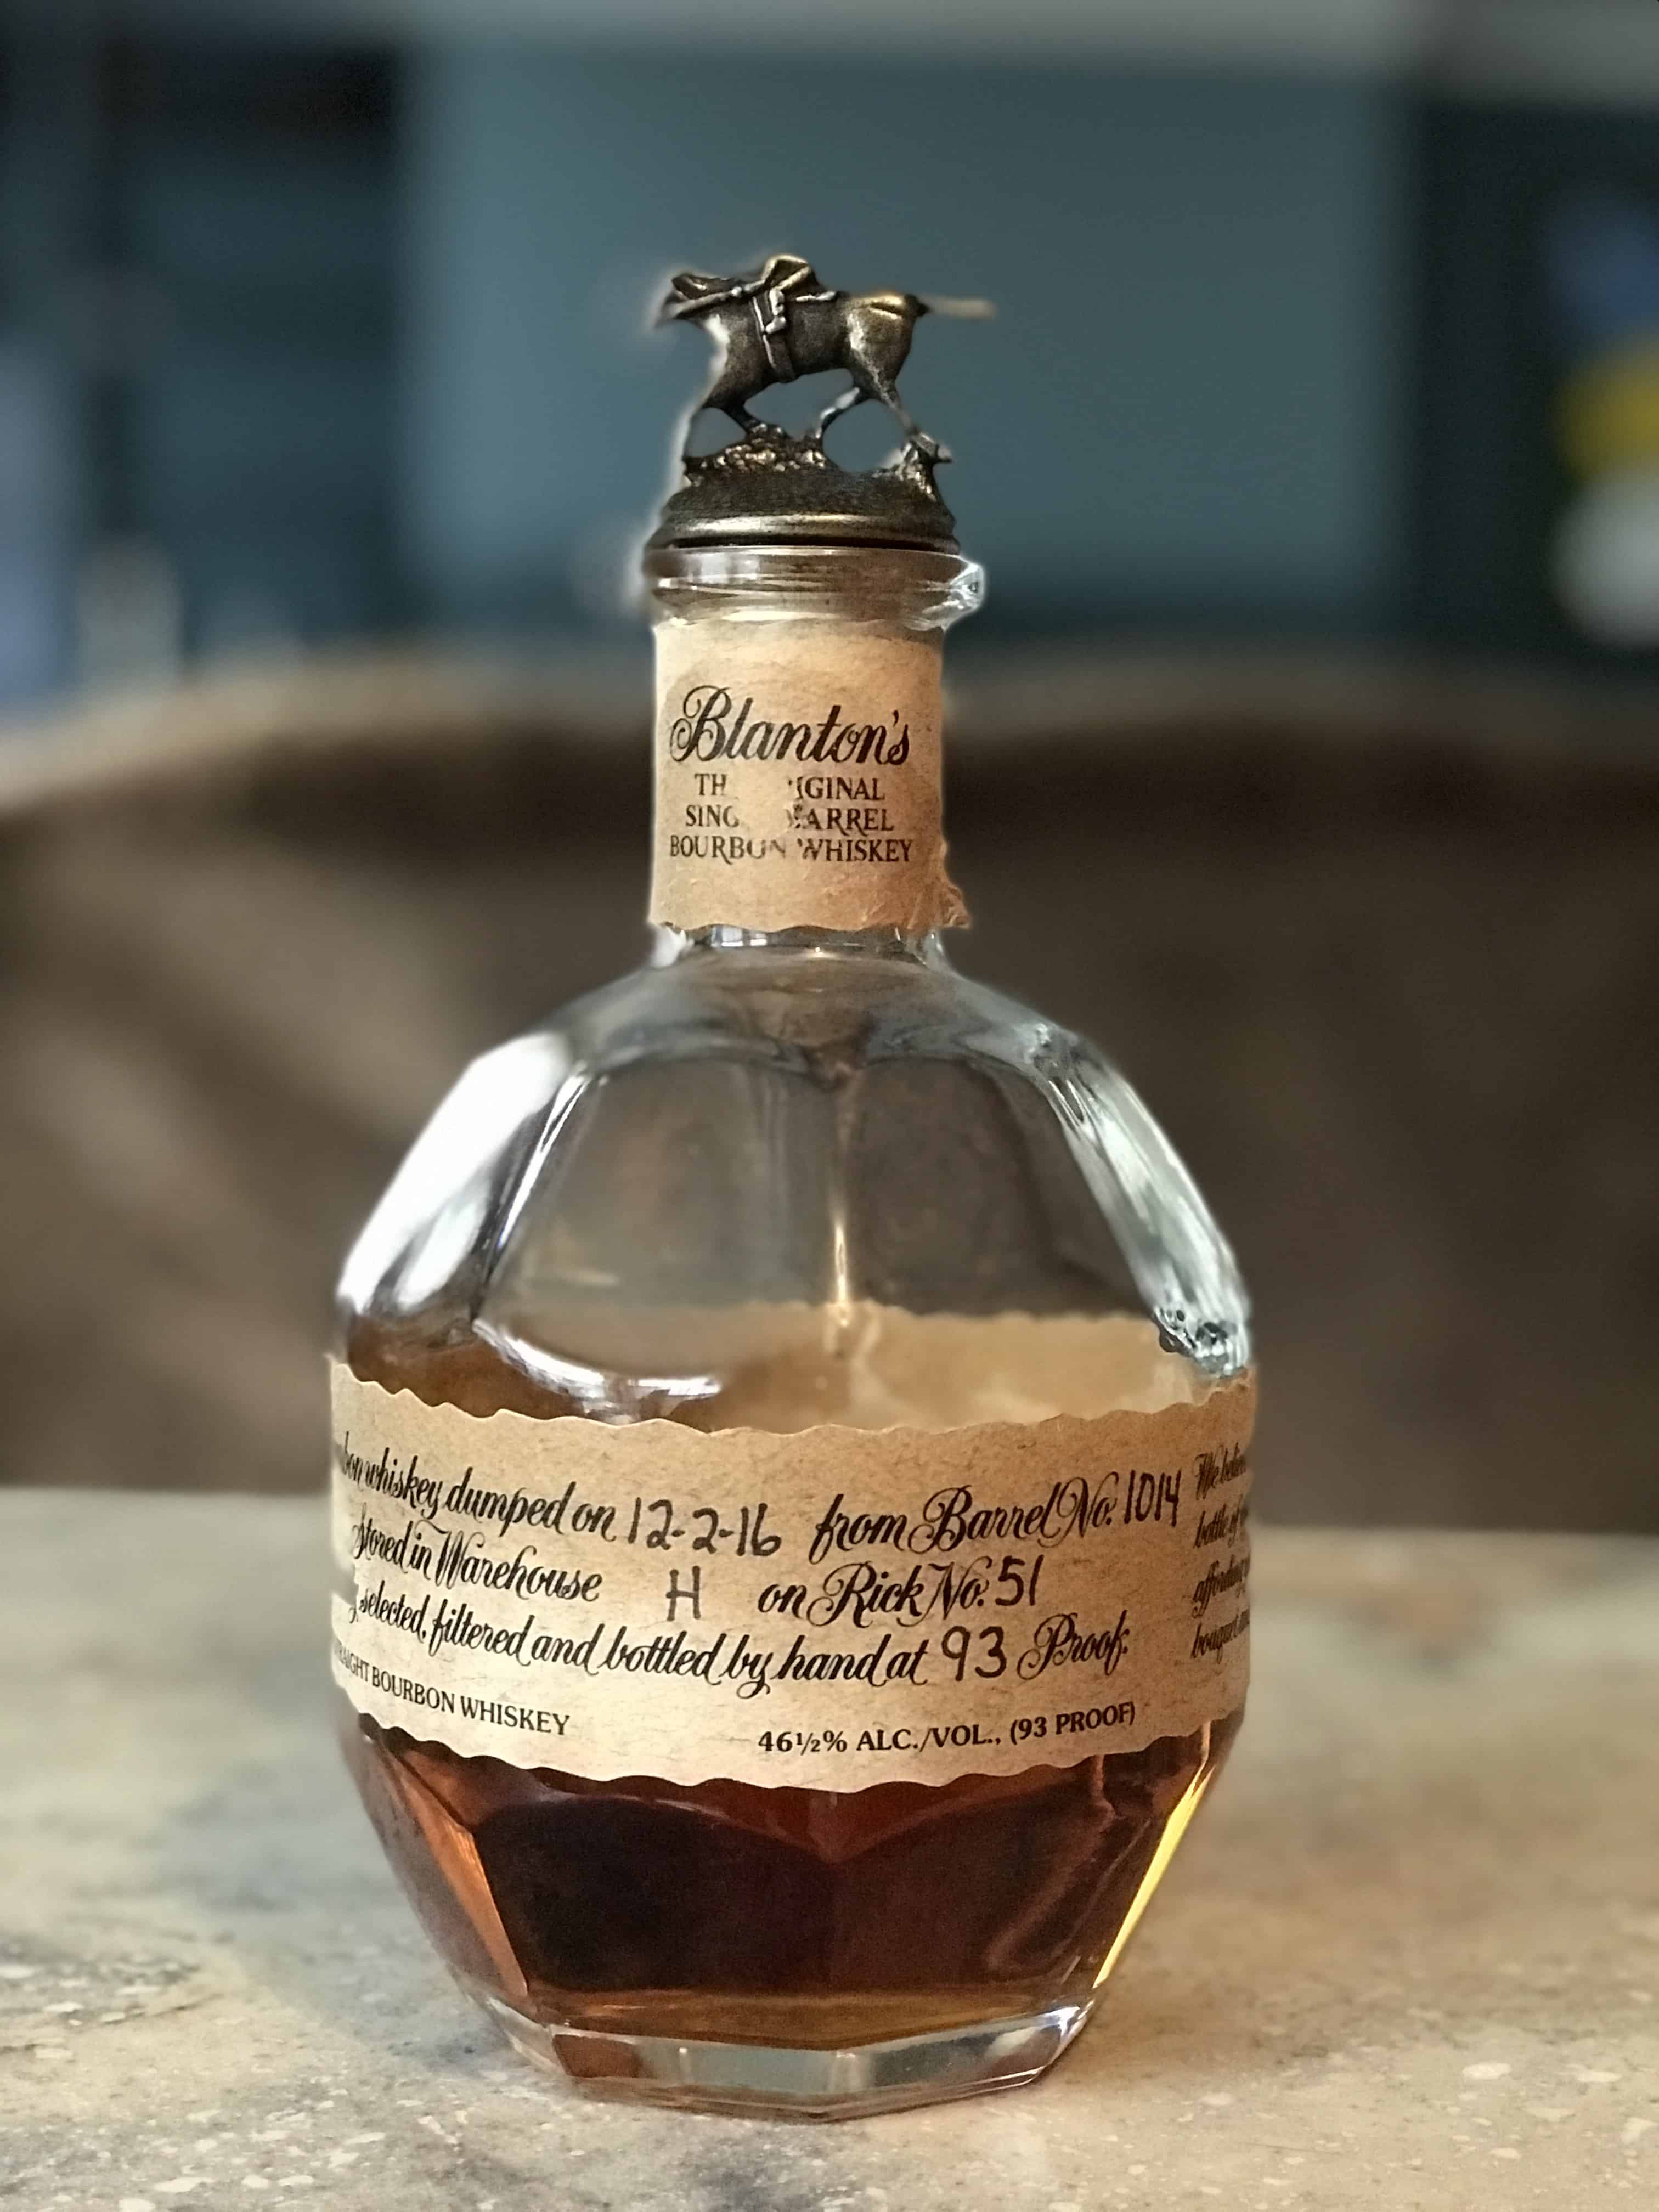 Blanton's Single Barrel Bourbon Whiskey Holiday gift guide 2017 for men